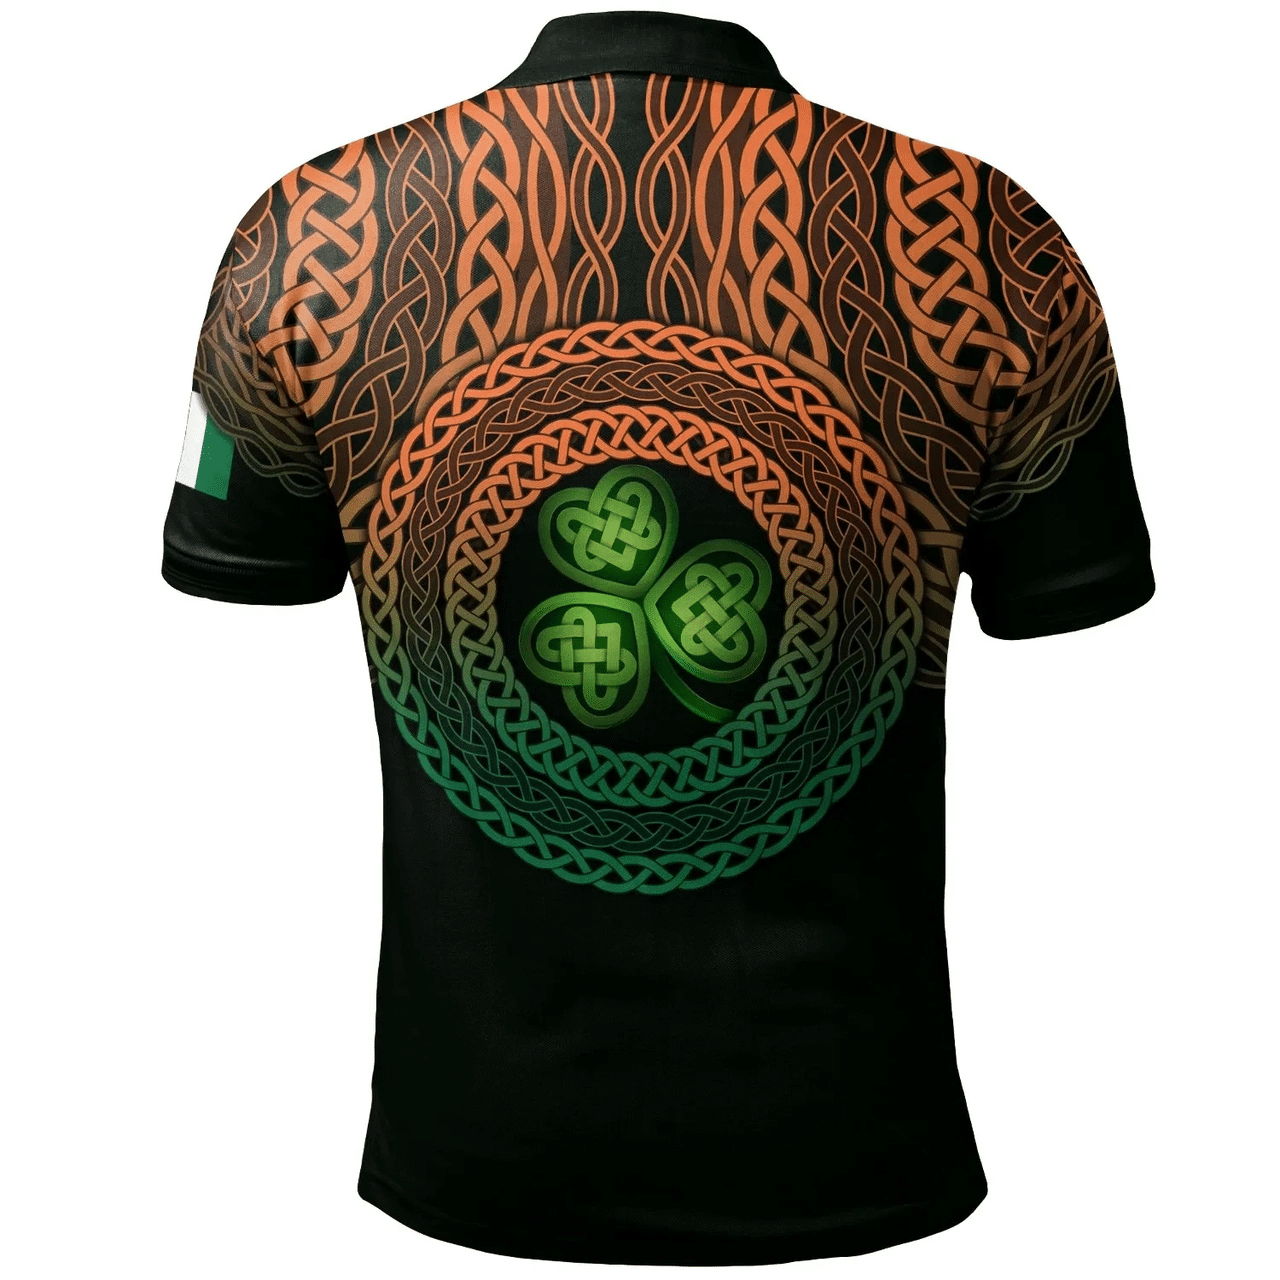 1stIreland Ireland Polo Shirt - Holte or Holt Irish Family Crest Polo Shirt - Celtic Pride A7 | 1stIreland.com